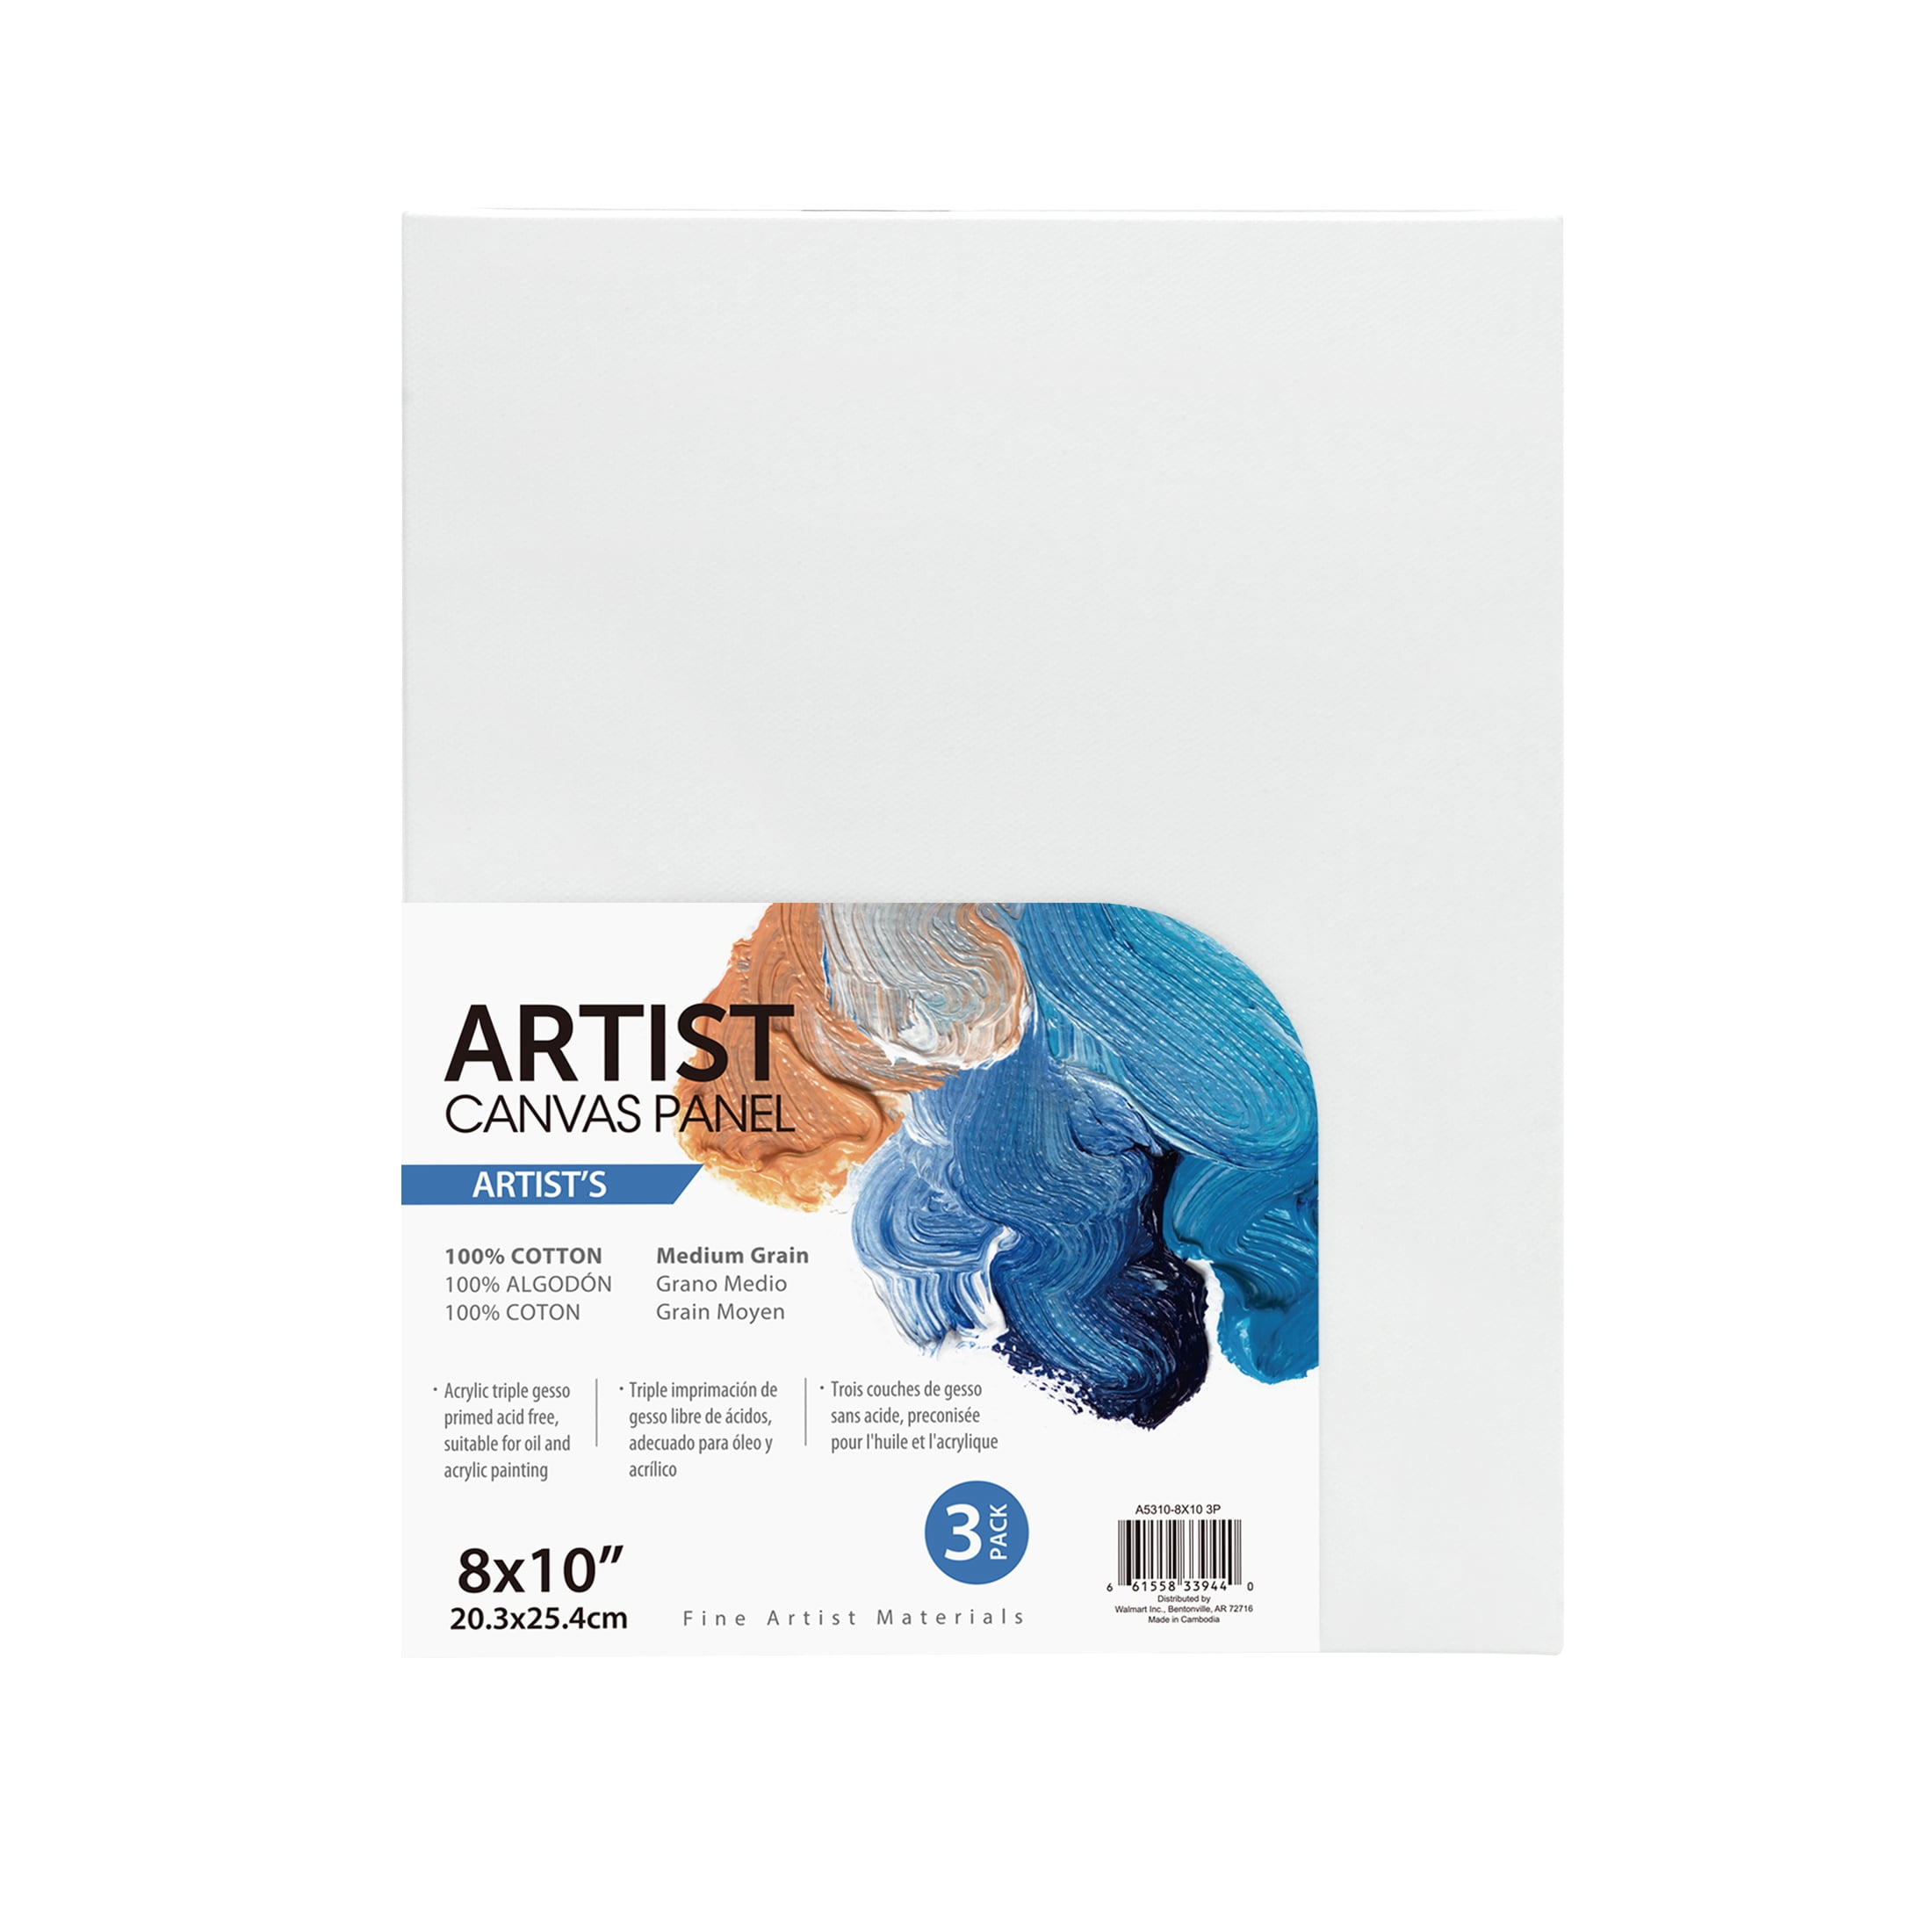 Artist Canvas Panel, 100% Cotton Acid Free White Canvas, 8"X10", 3 Pieces